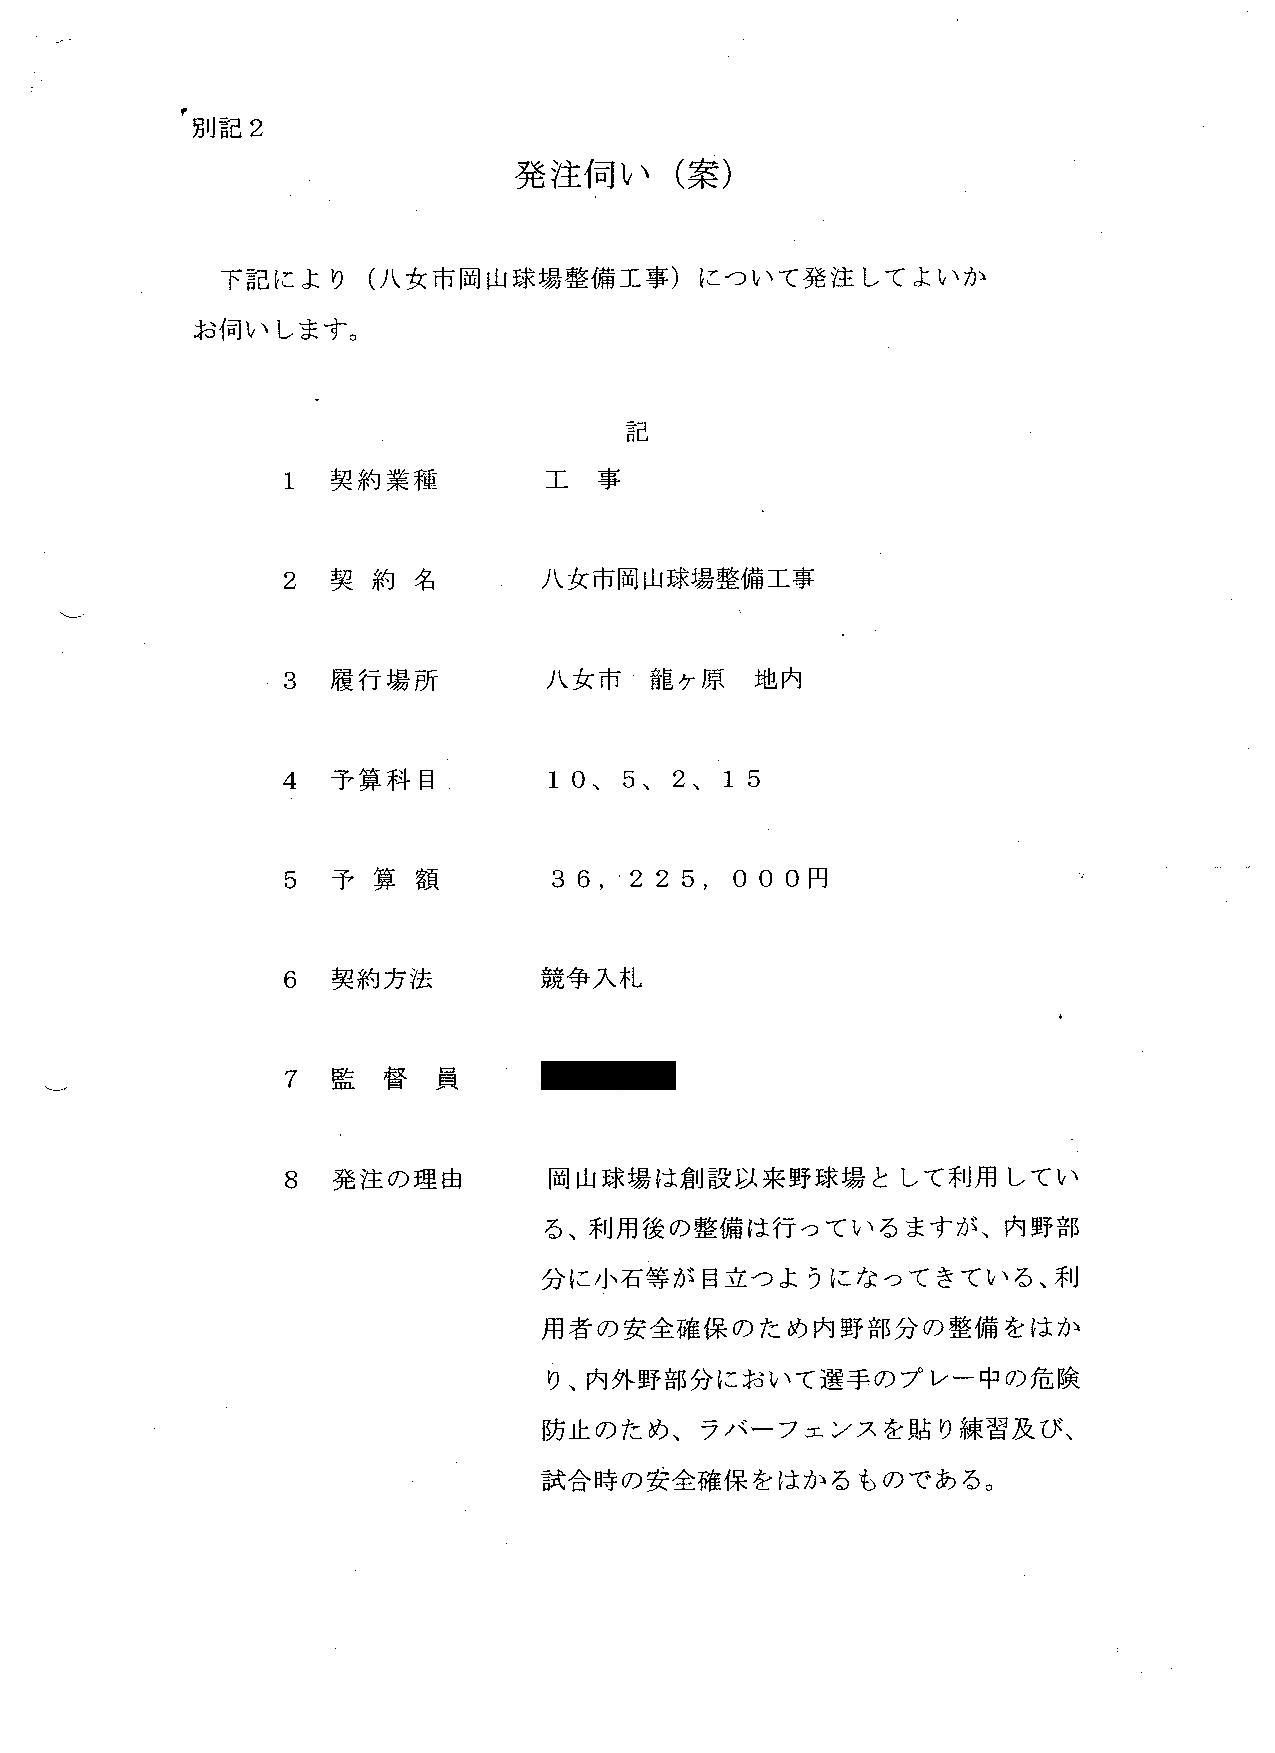 http://hunter-investigate.jp/news/2012/01/29/gennpatu%20929.jpg